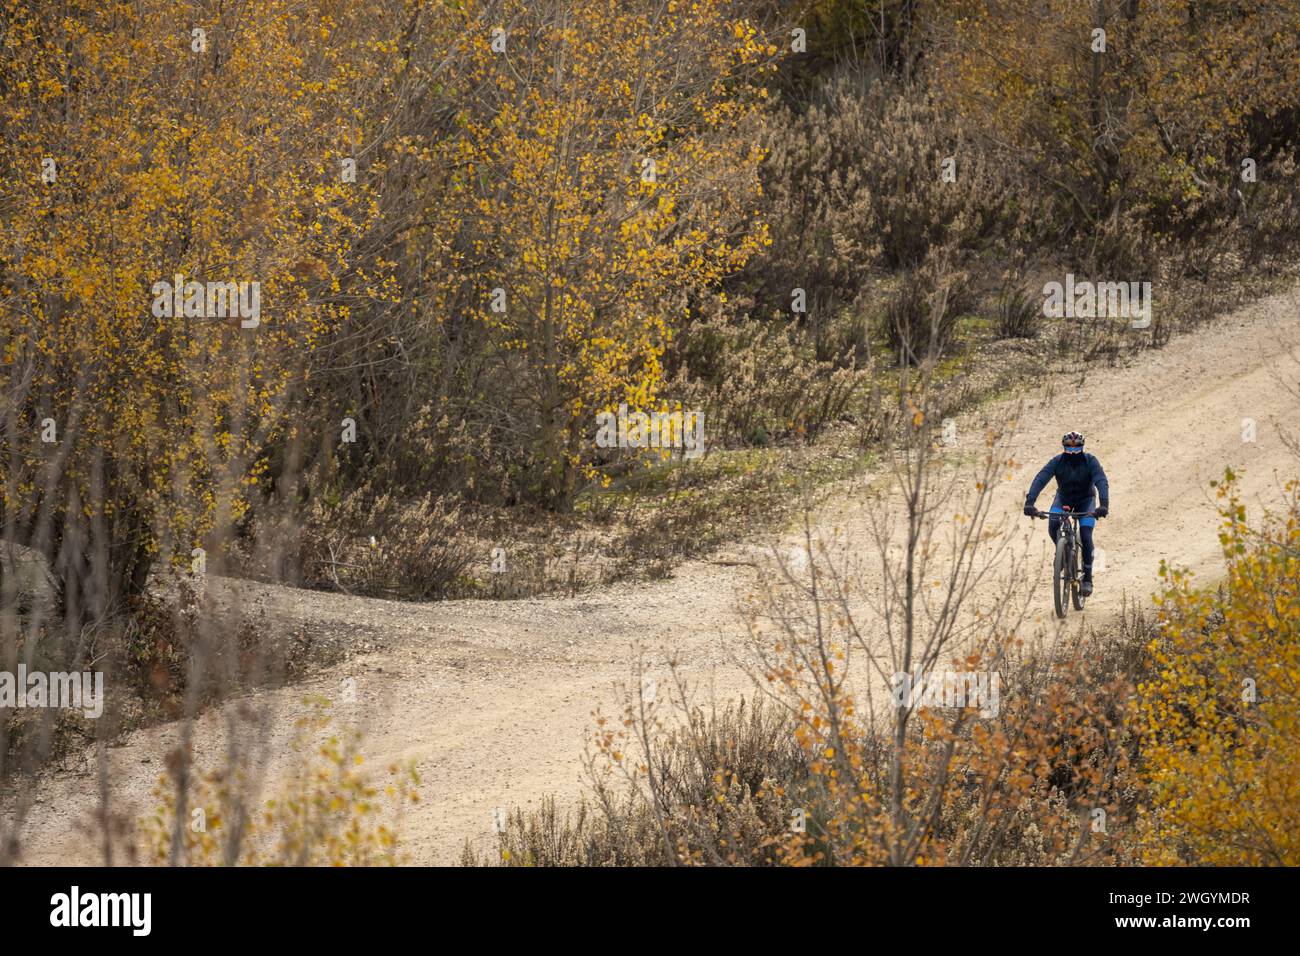 Un ciclista su una bicicletta sterrata percorrendo una strada sterrata e acquosa con fitti alberi su entrambi i lati della pista Foto Stock